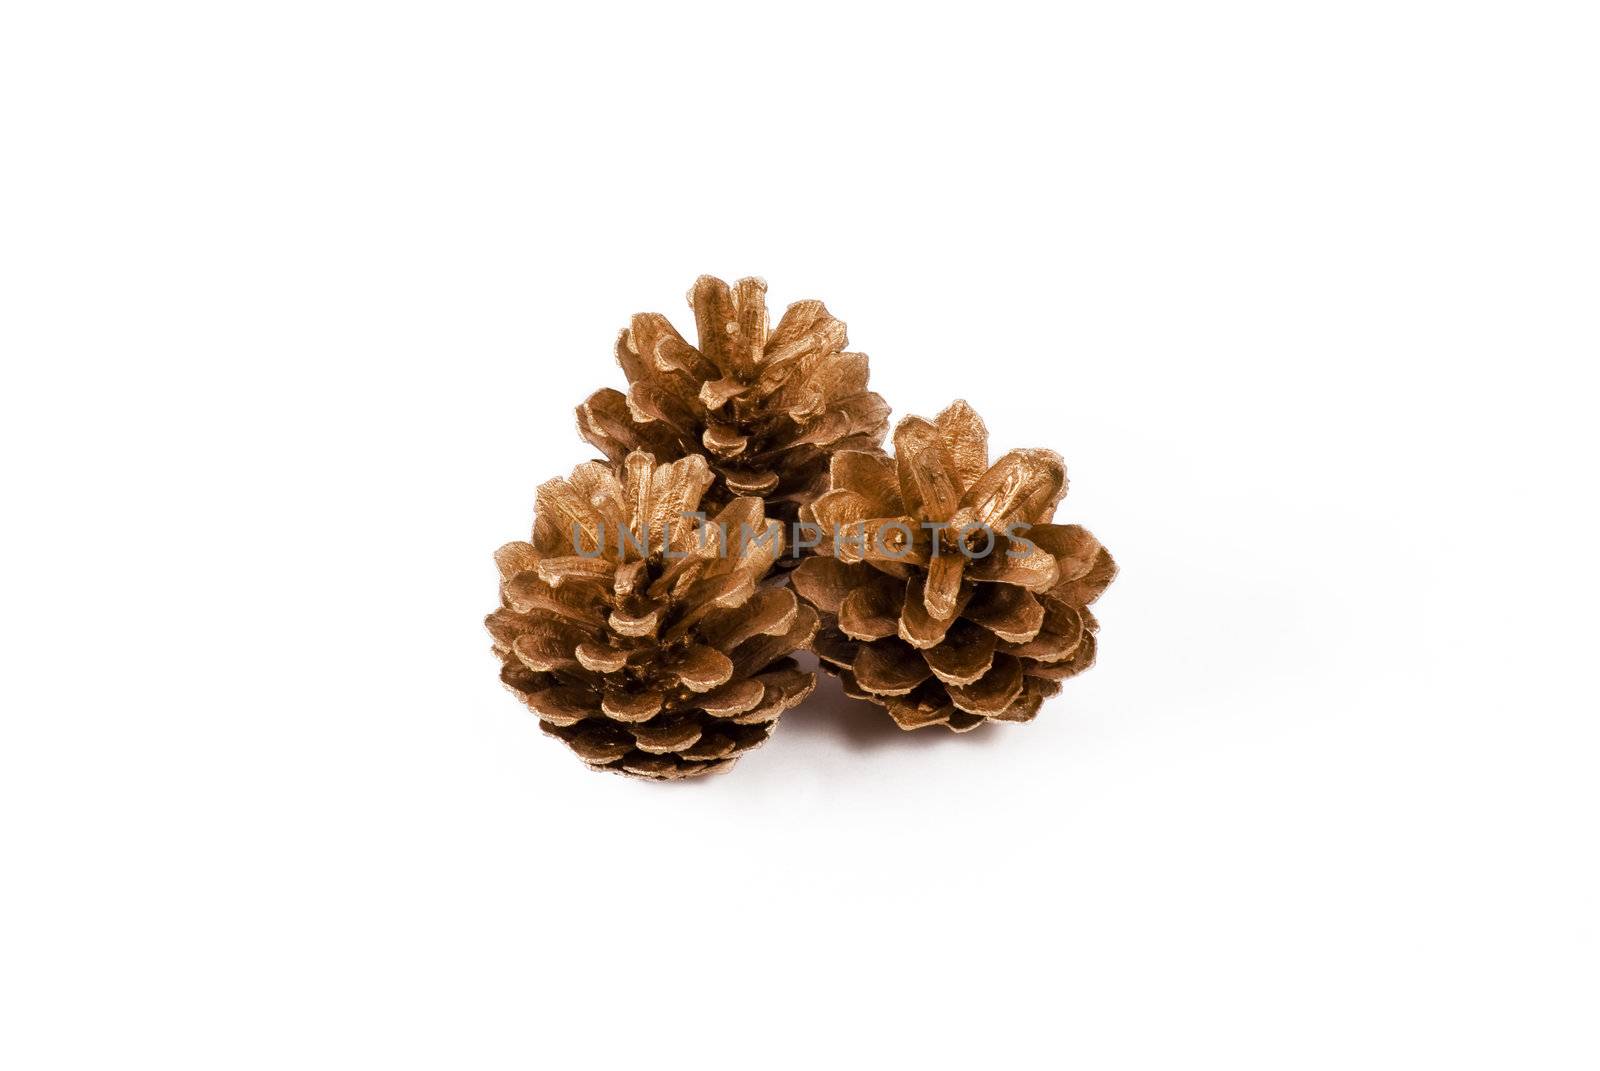 Pine cones by caldix